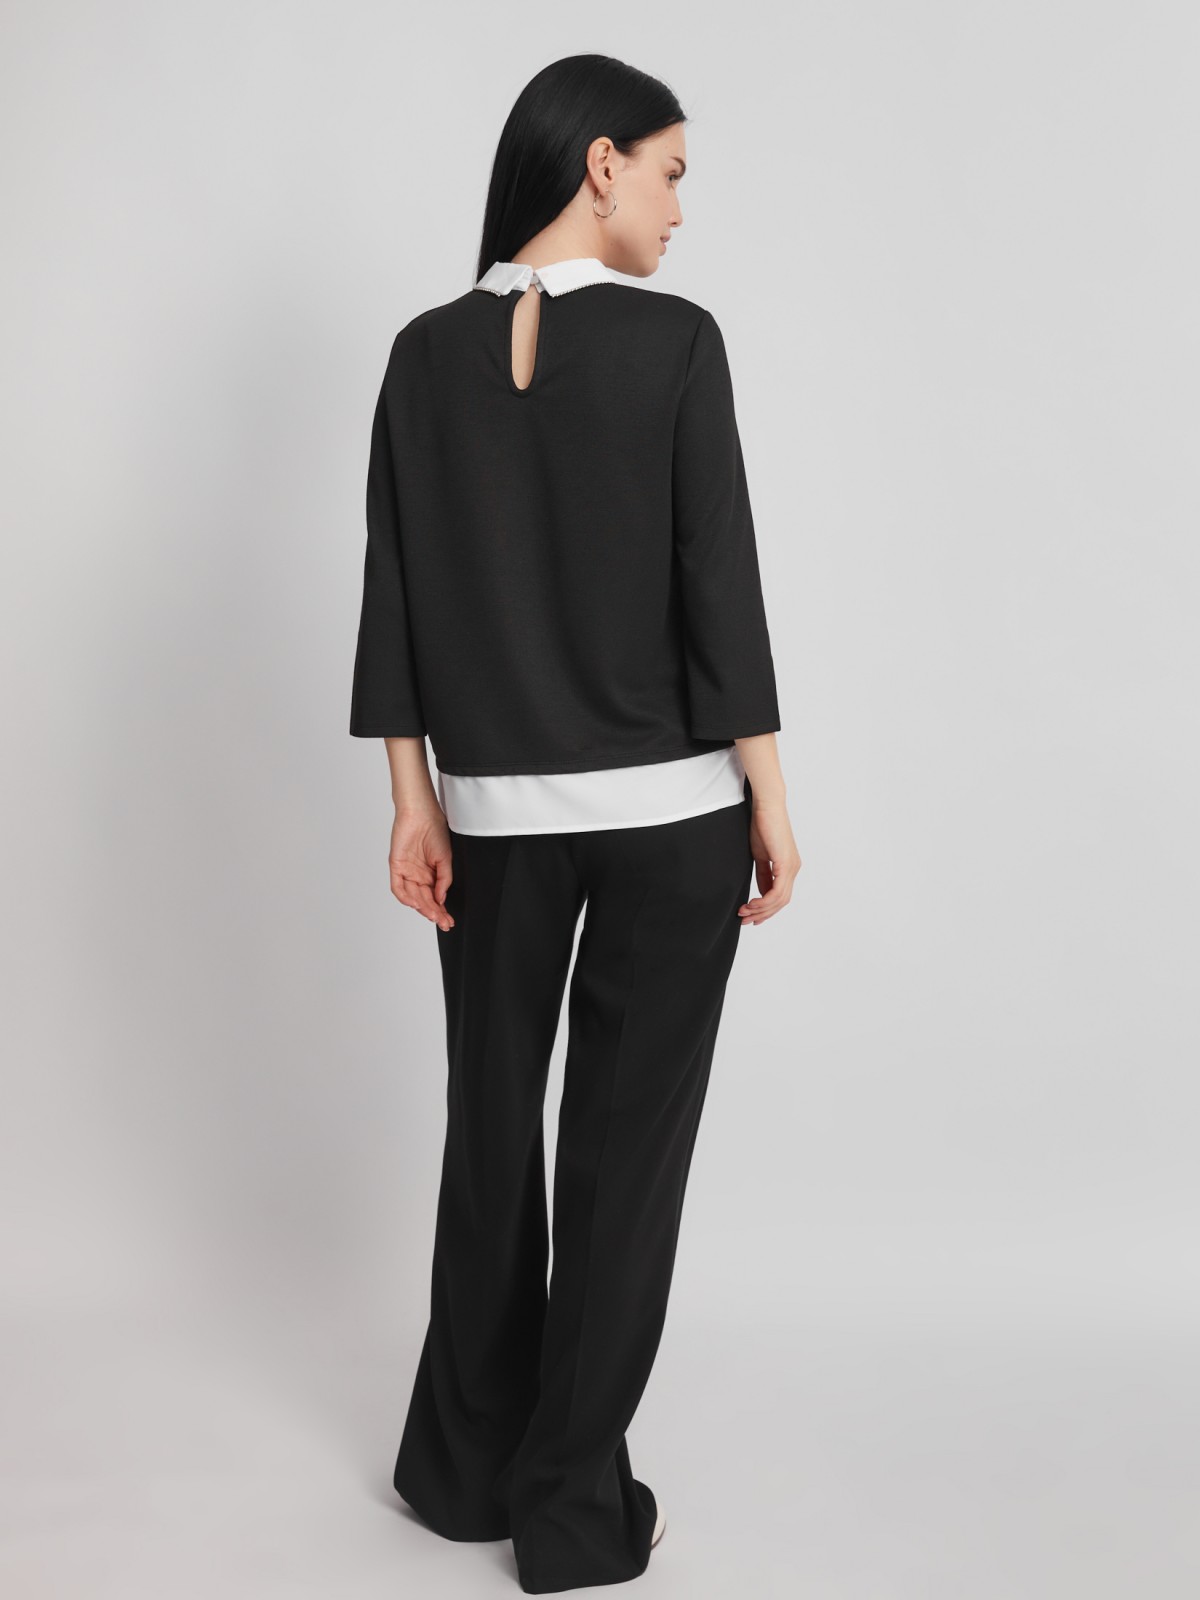 Комбинированный джемпер с блузкой zolla 023313713053, цвет черный, размер M - фото 6